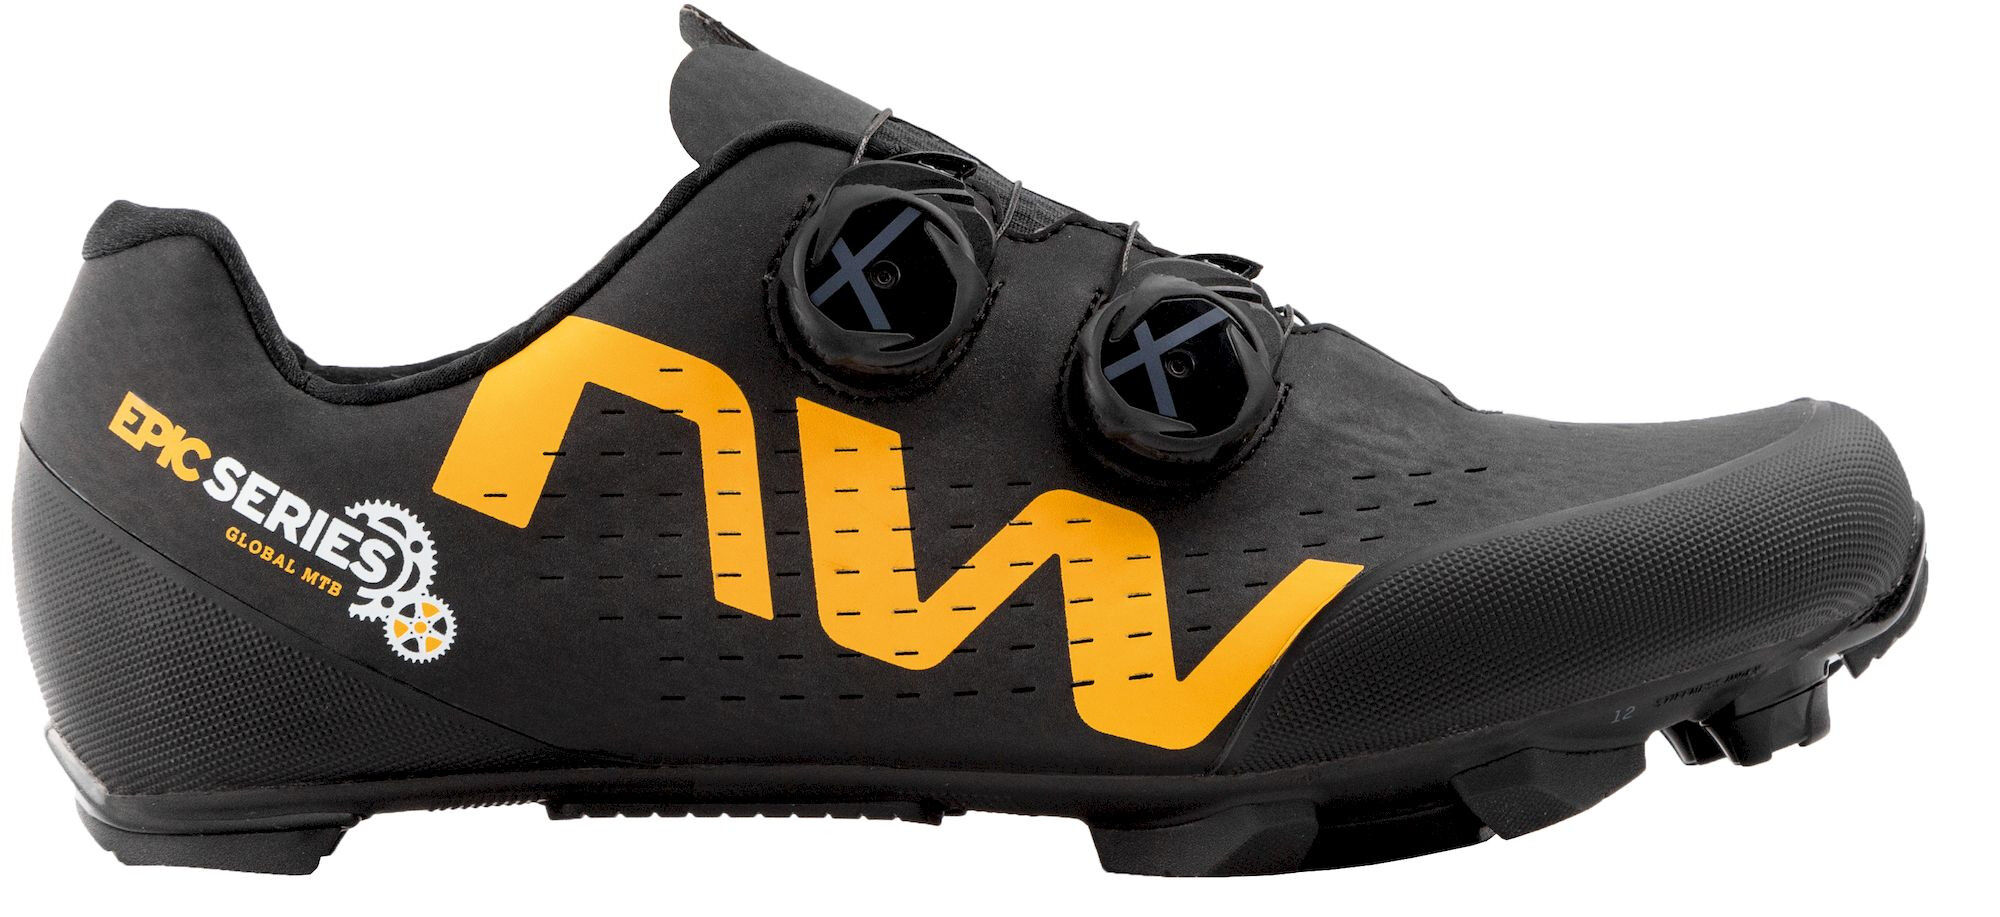 Northwave Rebel 3 Epic Series - Chaussures VTT homme | Hardloop